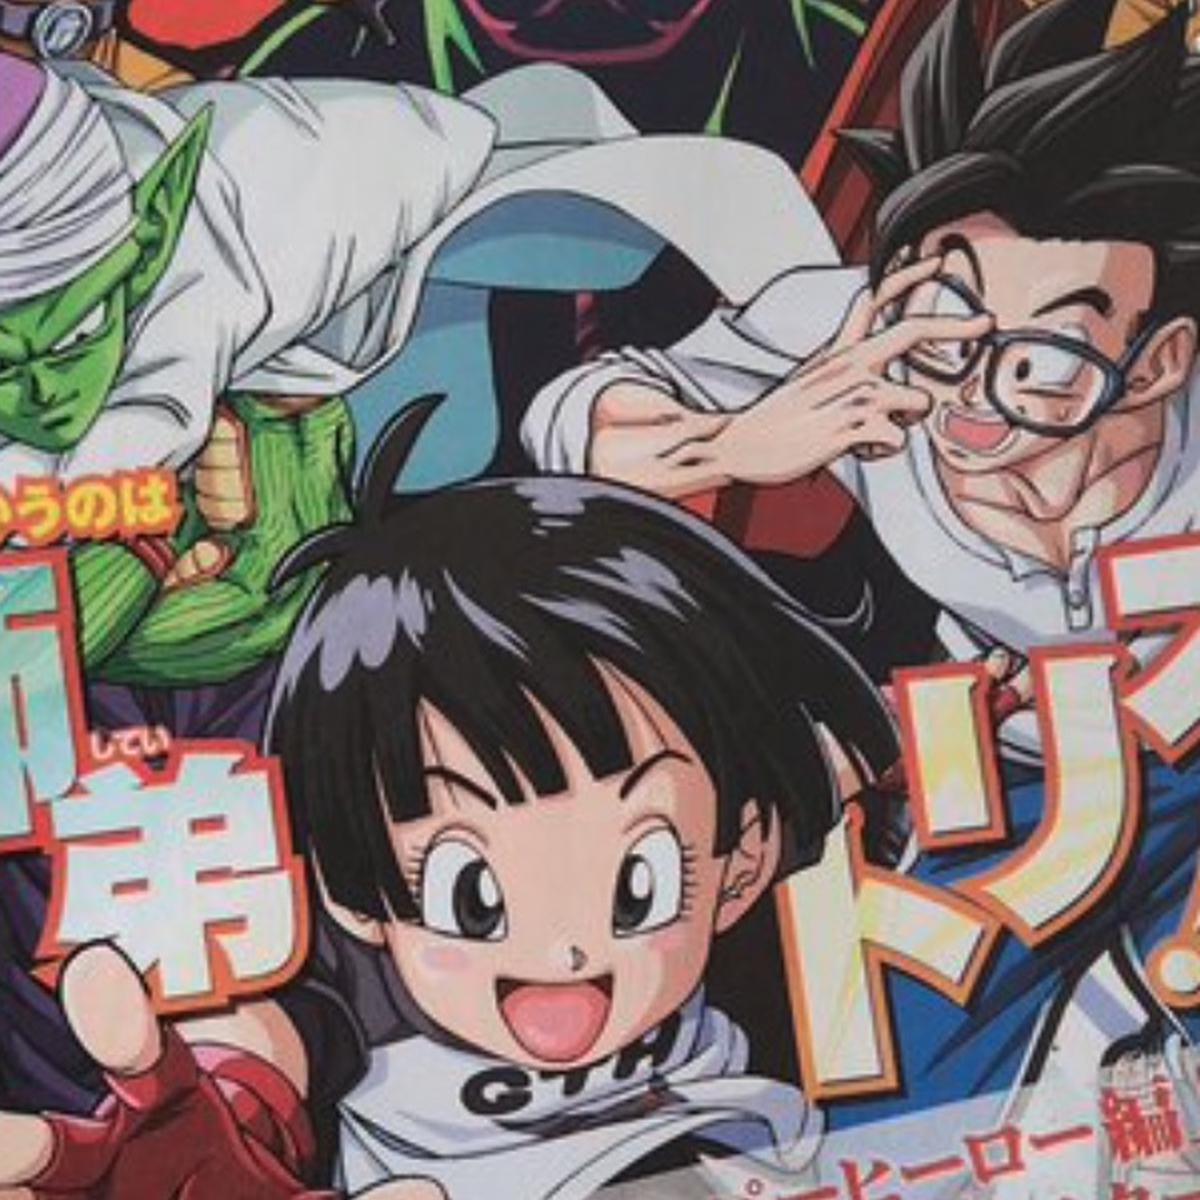 Manga de Dragon Ball Super revela la primera imagen del capítulo 92